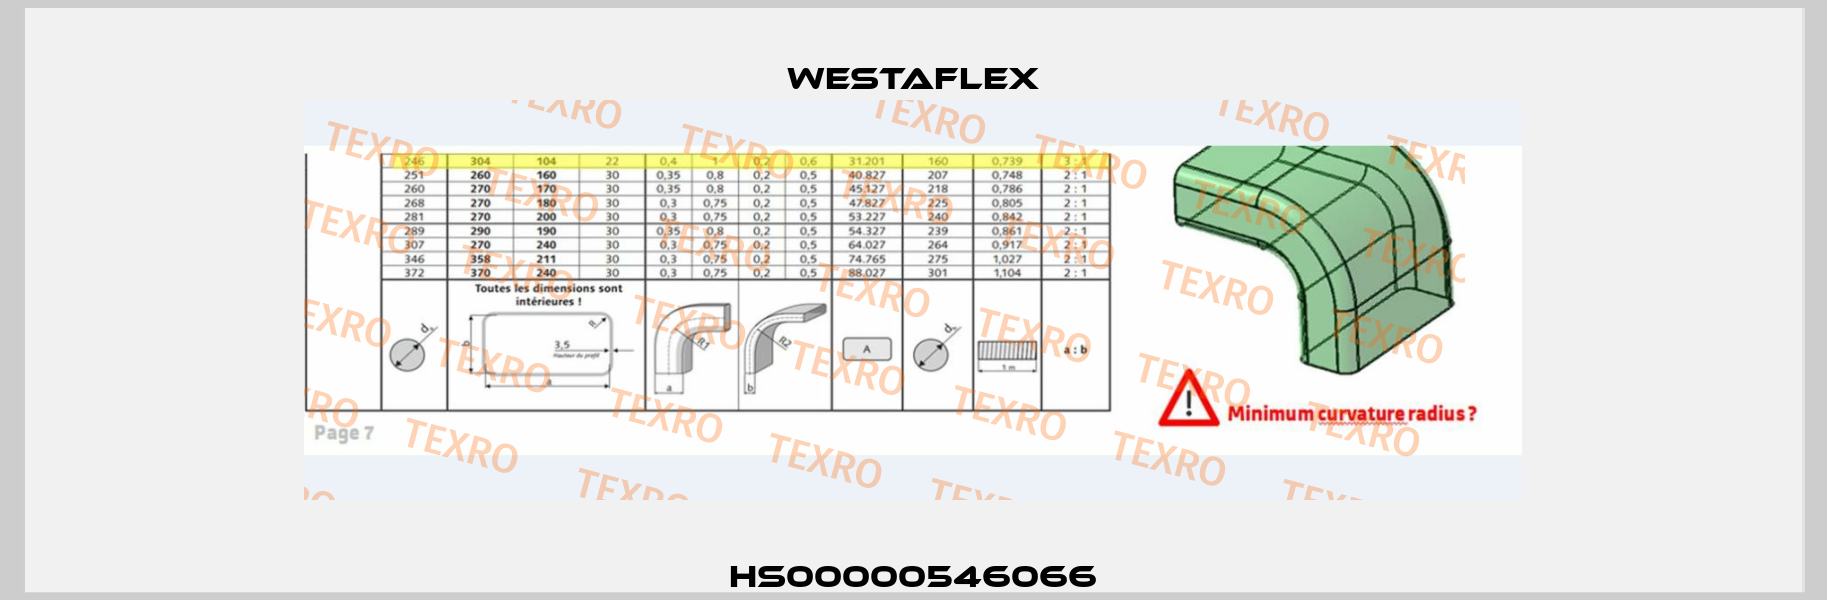 HS00000546066 Westaflex